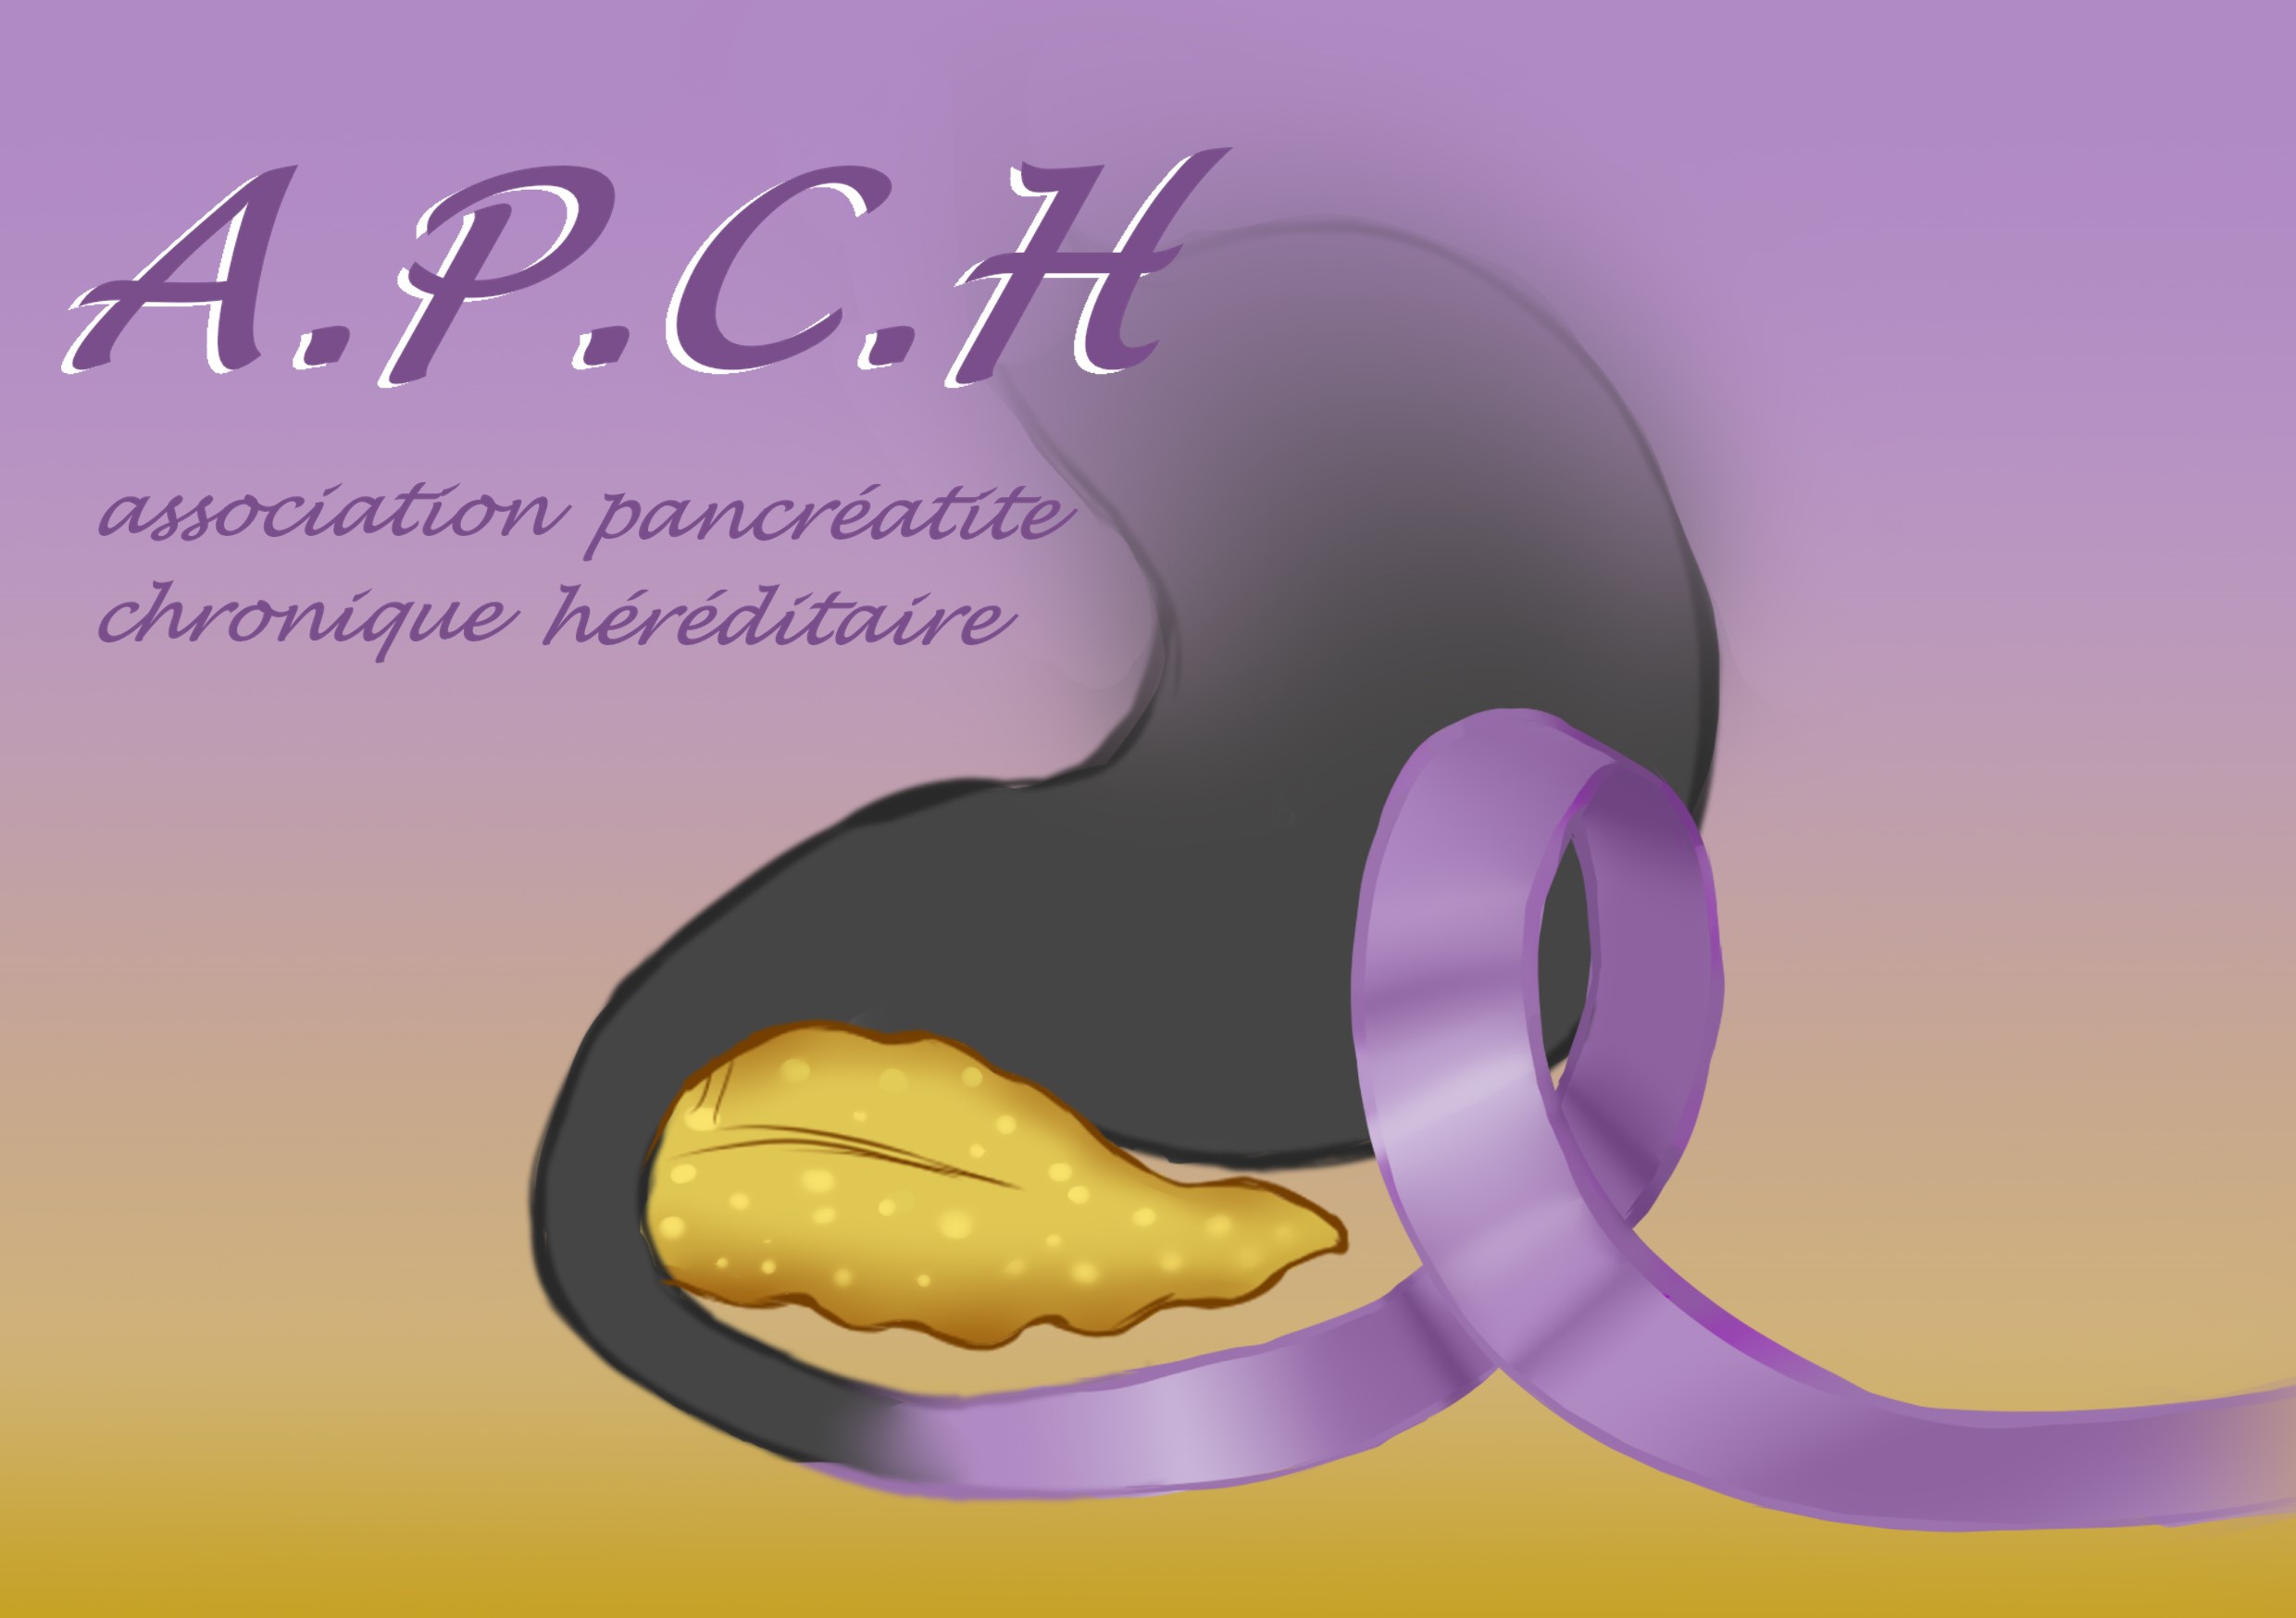 A.P.C.H – Association des Pancréatites Chroniques Héréditaires